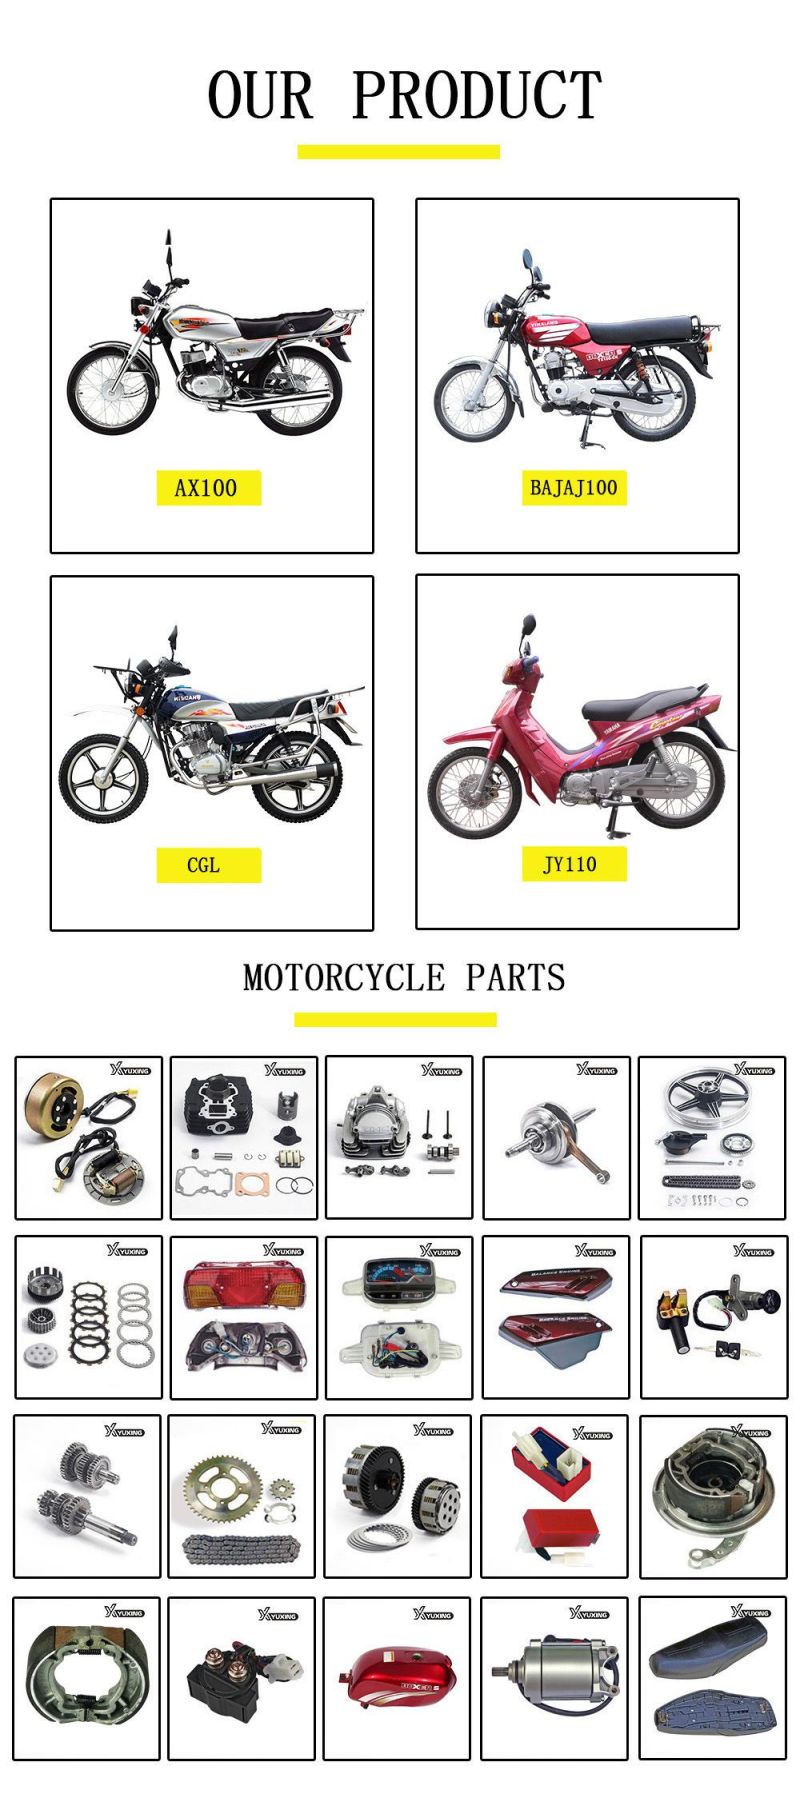 Motorcycle Parts Motorcycle Body Parts Motorcycle Tail Lamp